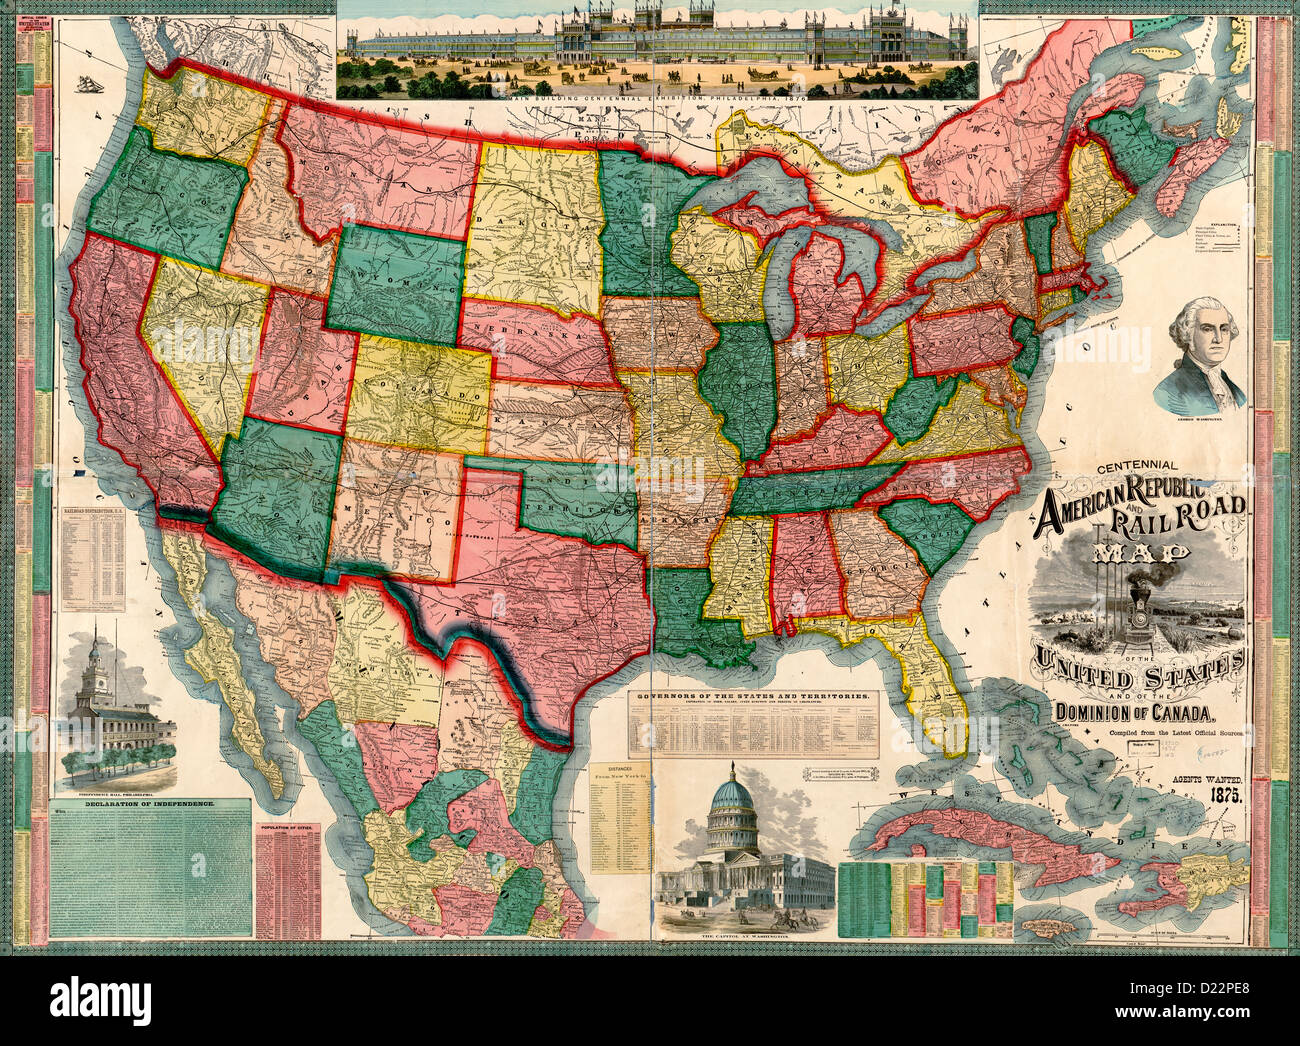 Centennial repubblica americana e la ferrovia mappa degli Stati Uniti e del dominio del Canada. 1876 Foto Stock